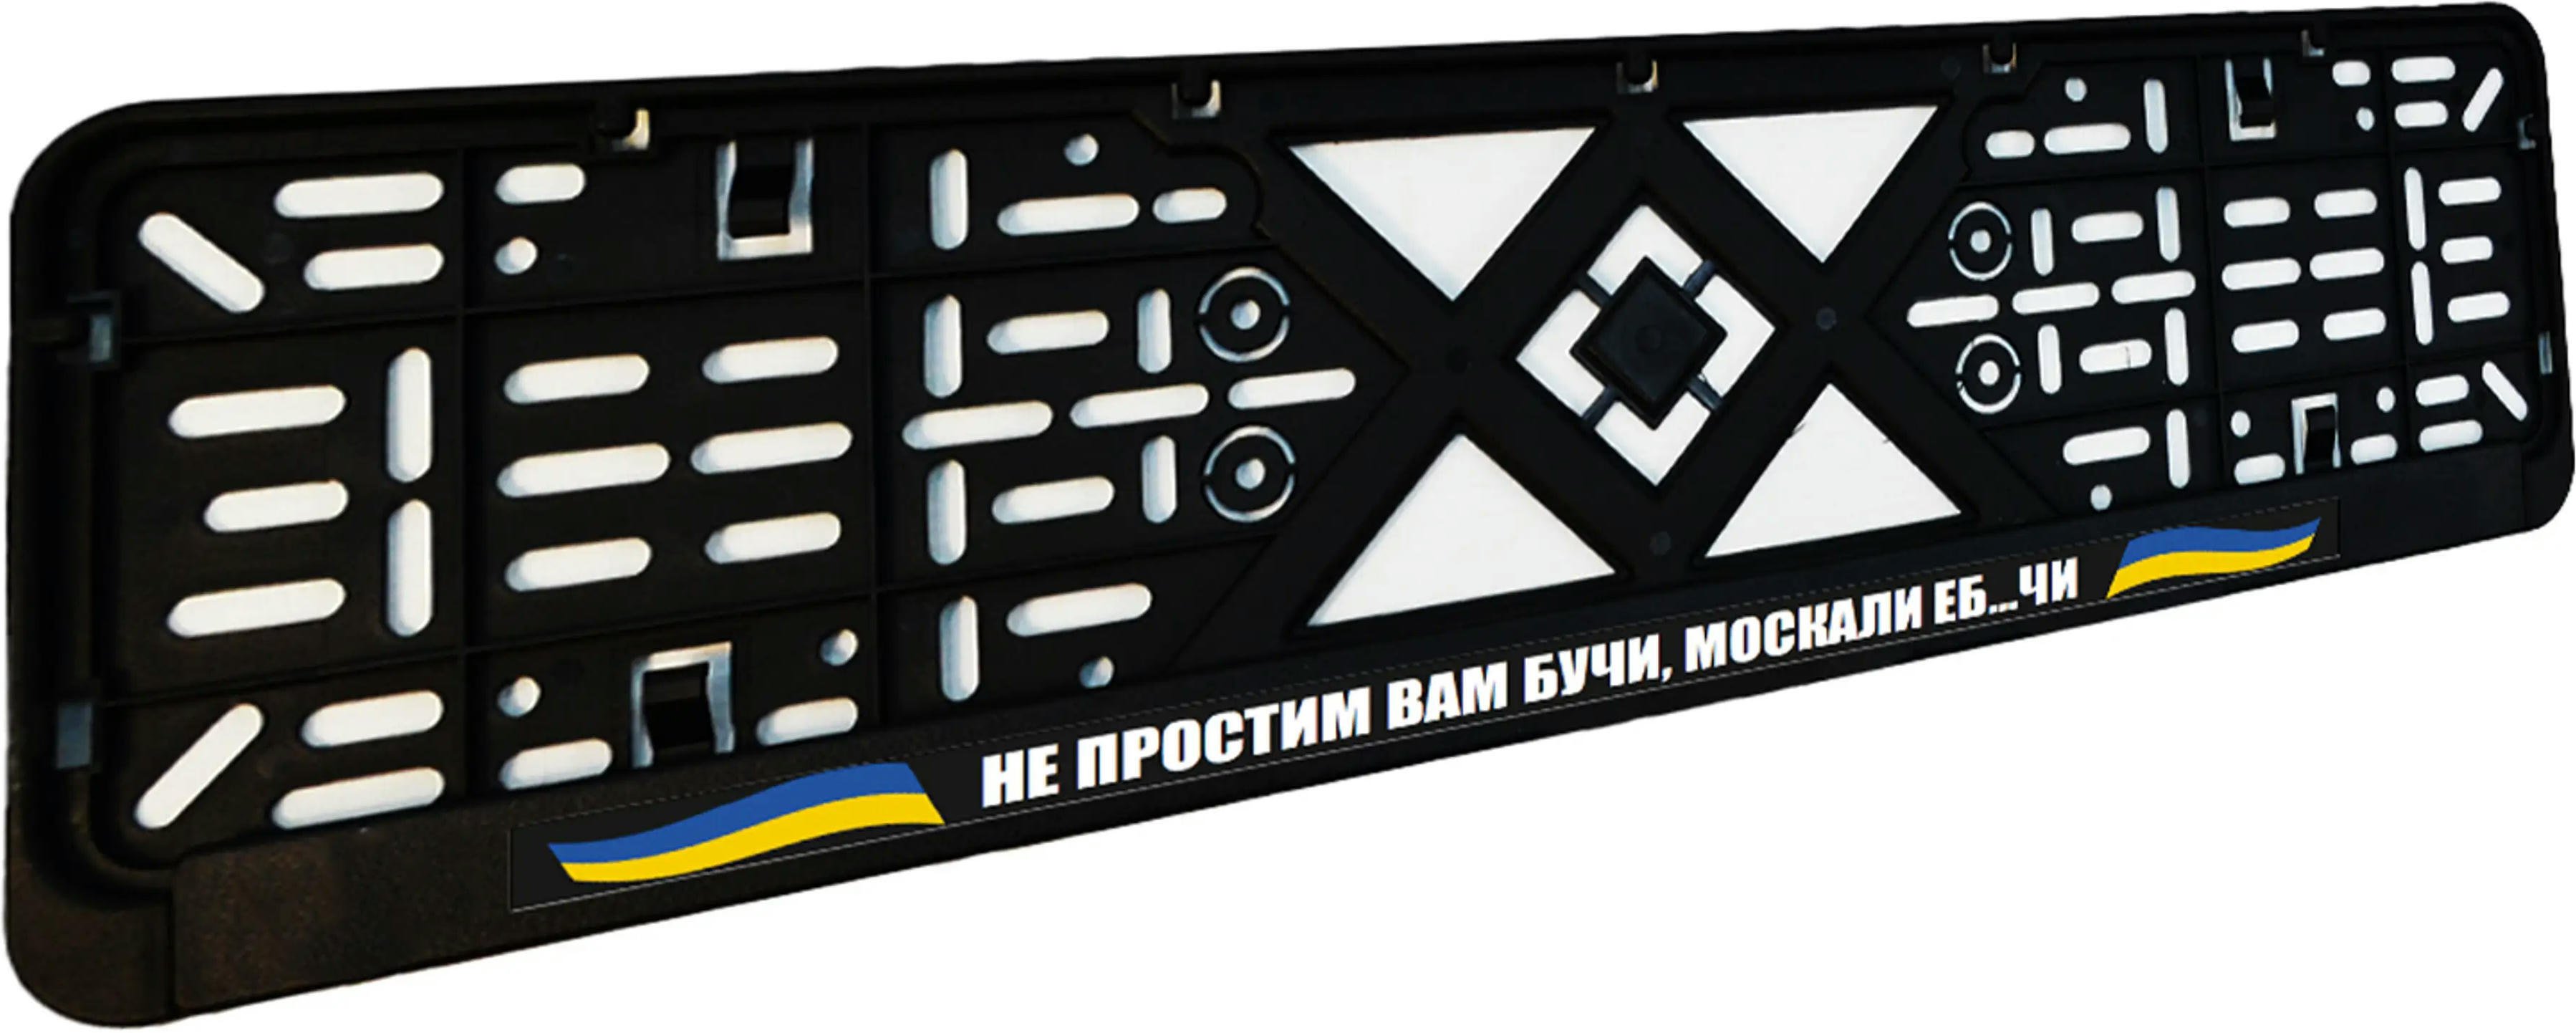 Рамка номерного знака Poputchik пластиковая патриотическая Не простим вам Бучи, москали еб…чи (24-265-IS) фото 3